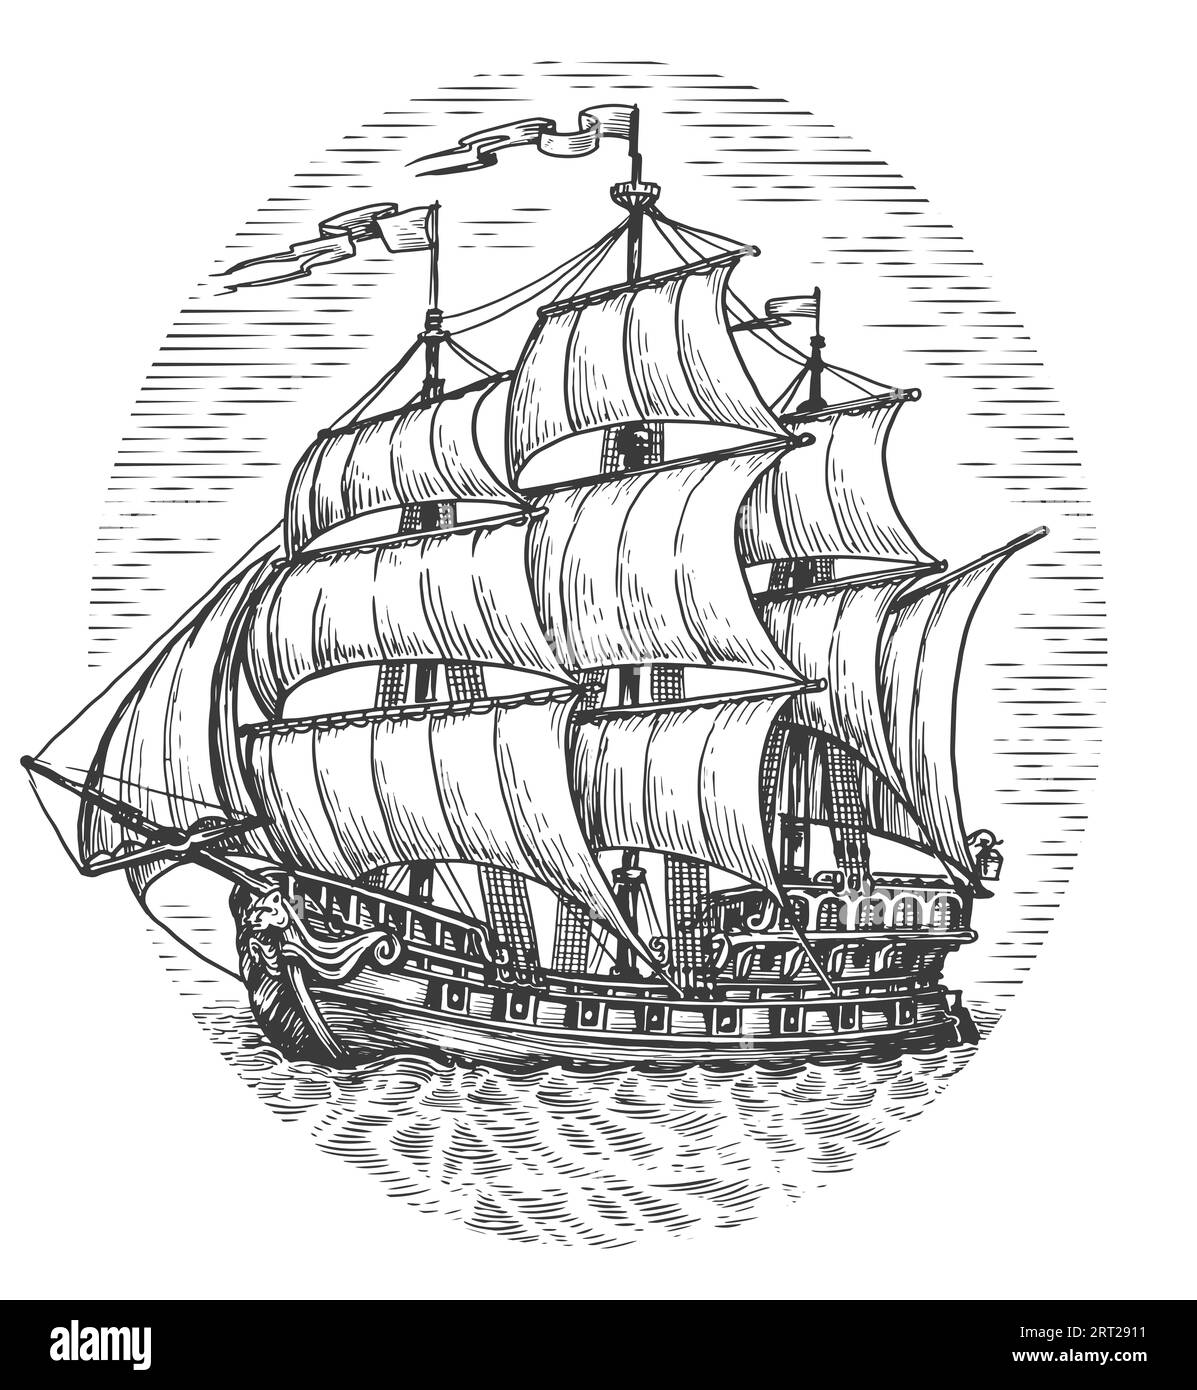 Schiff mit Segeln, Illustration. Vintage-Segelboot auf See, Skizze im Gravurstil Stockfoto